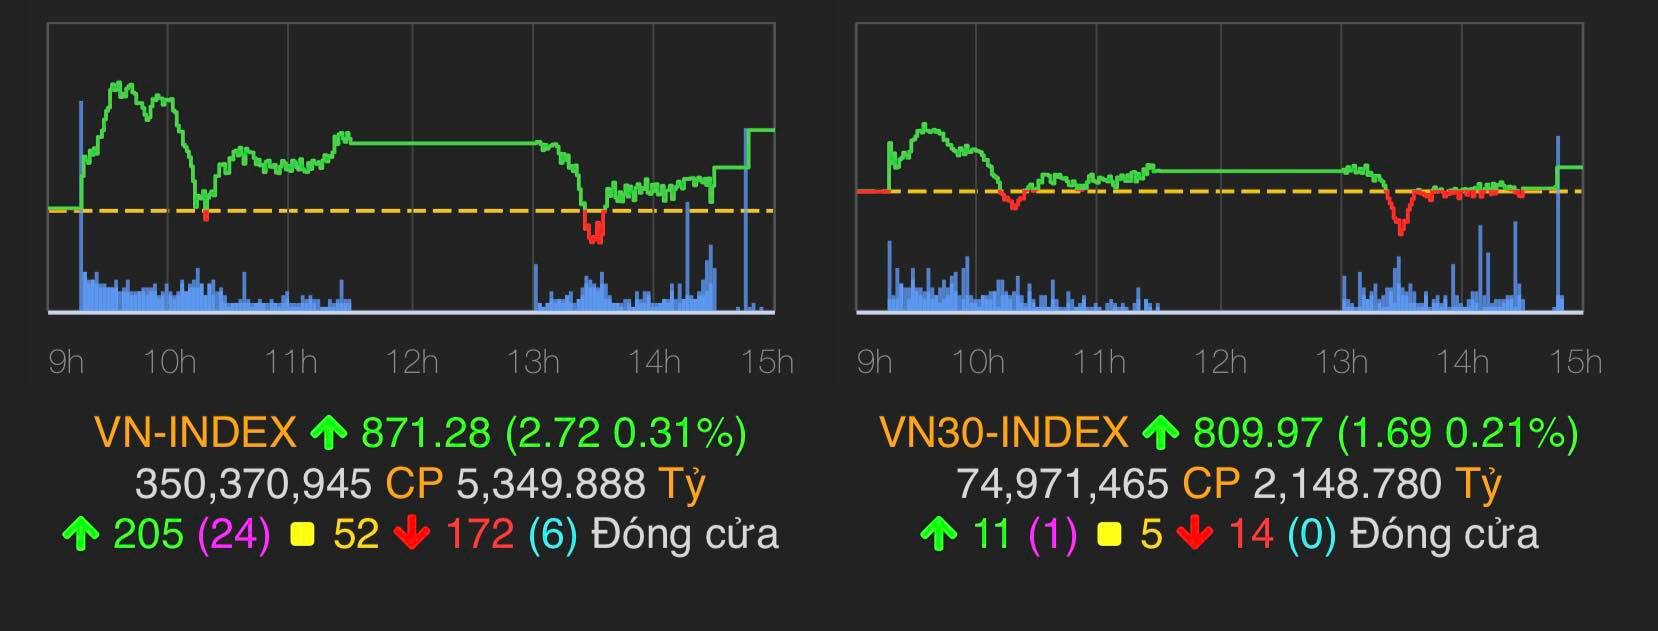 VN-Index tăng 2,72 điểm (0,31%) lên 871,28 điểm.